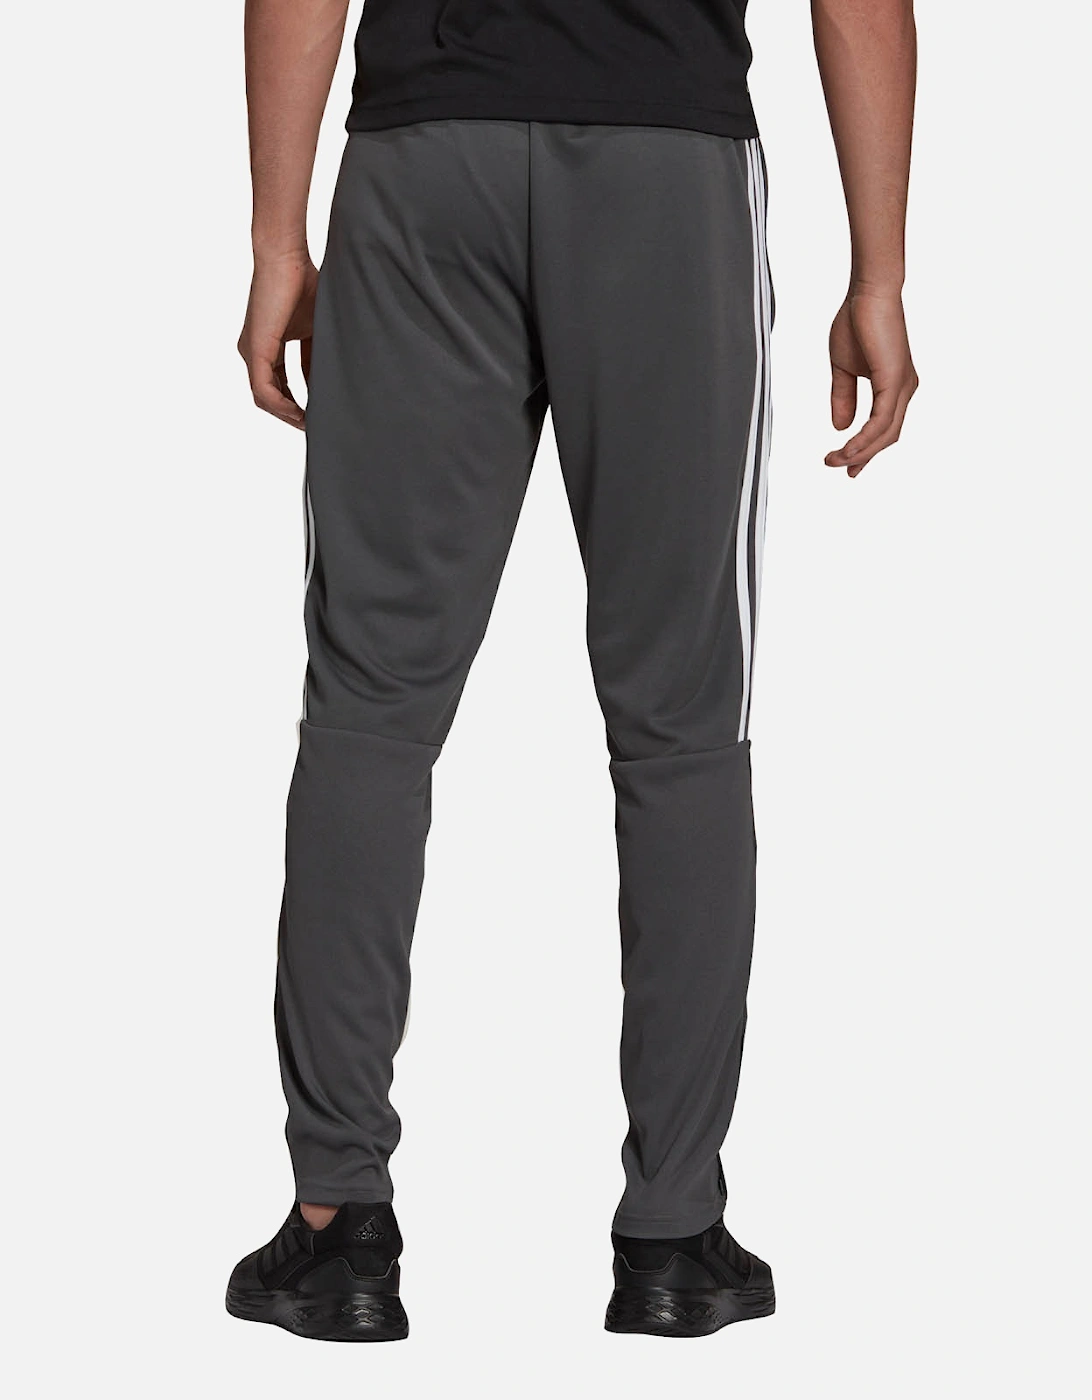 Mens Sereno Jogger Pants (Grey)